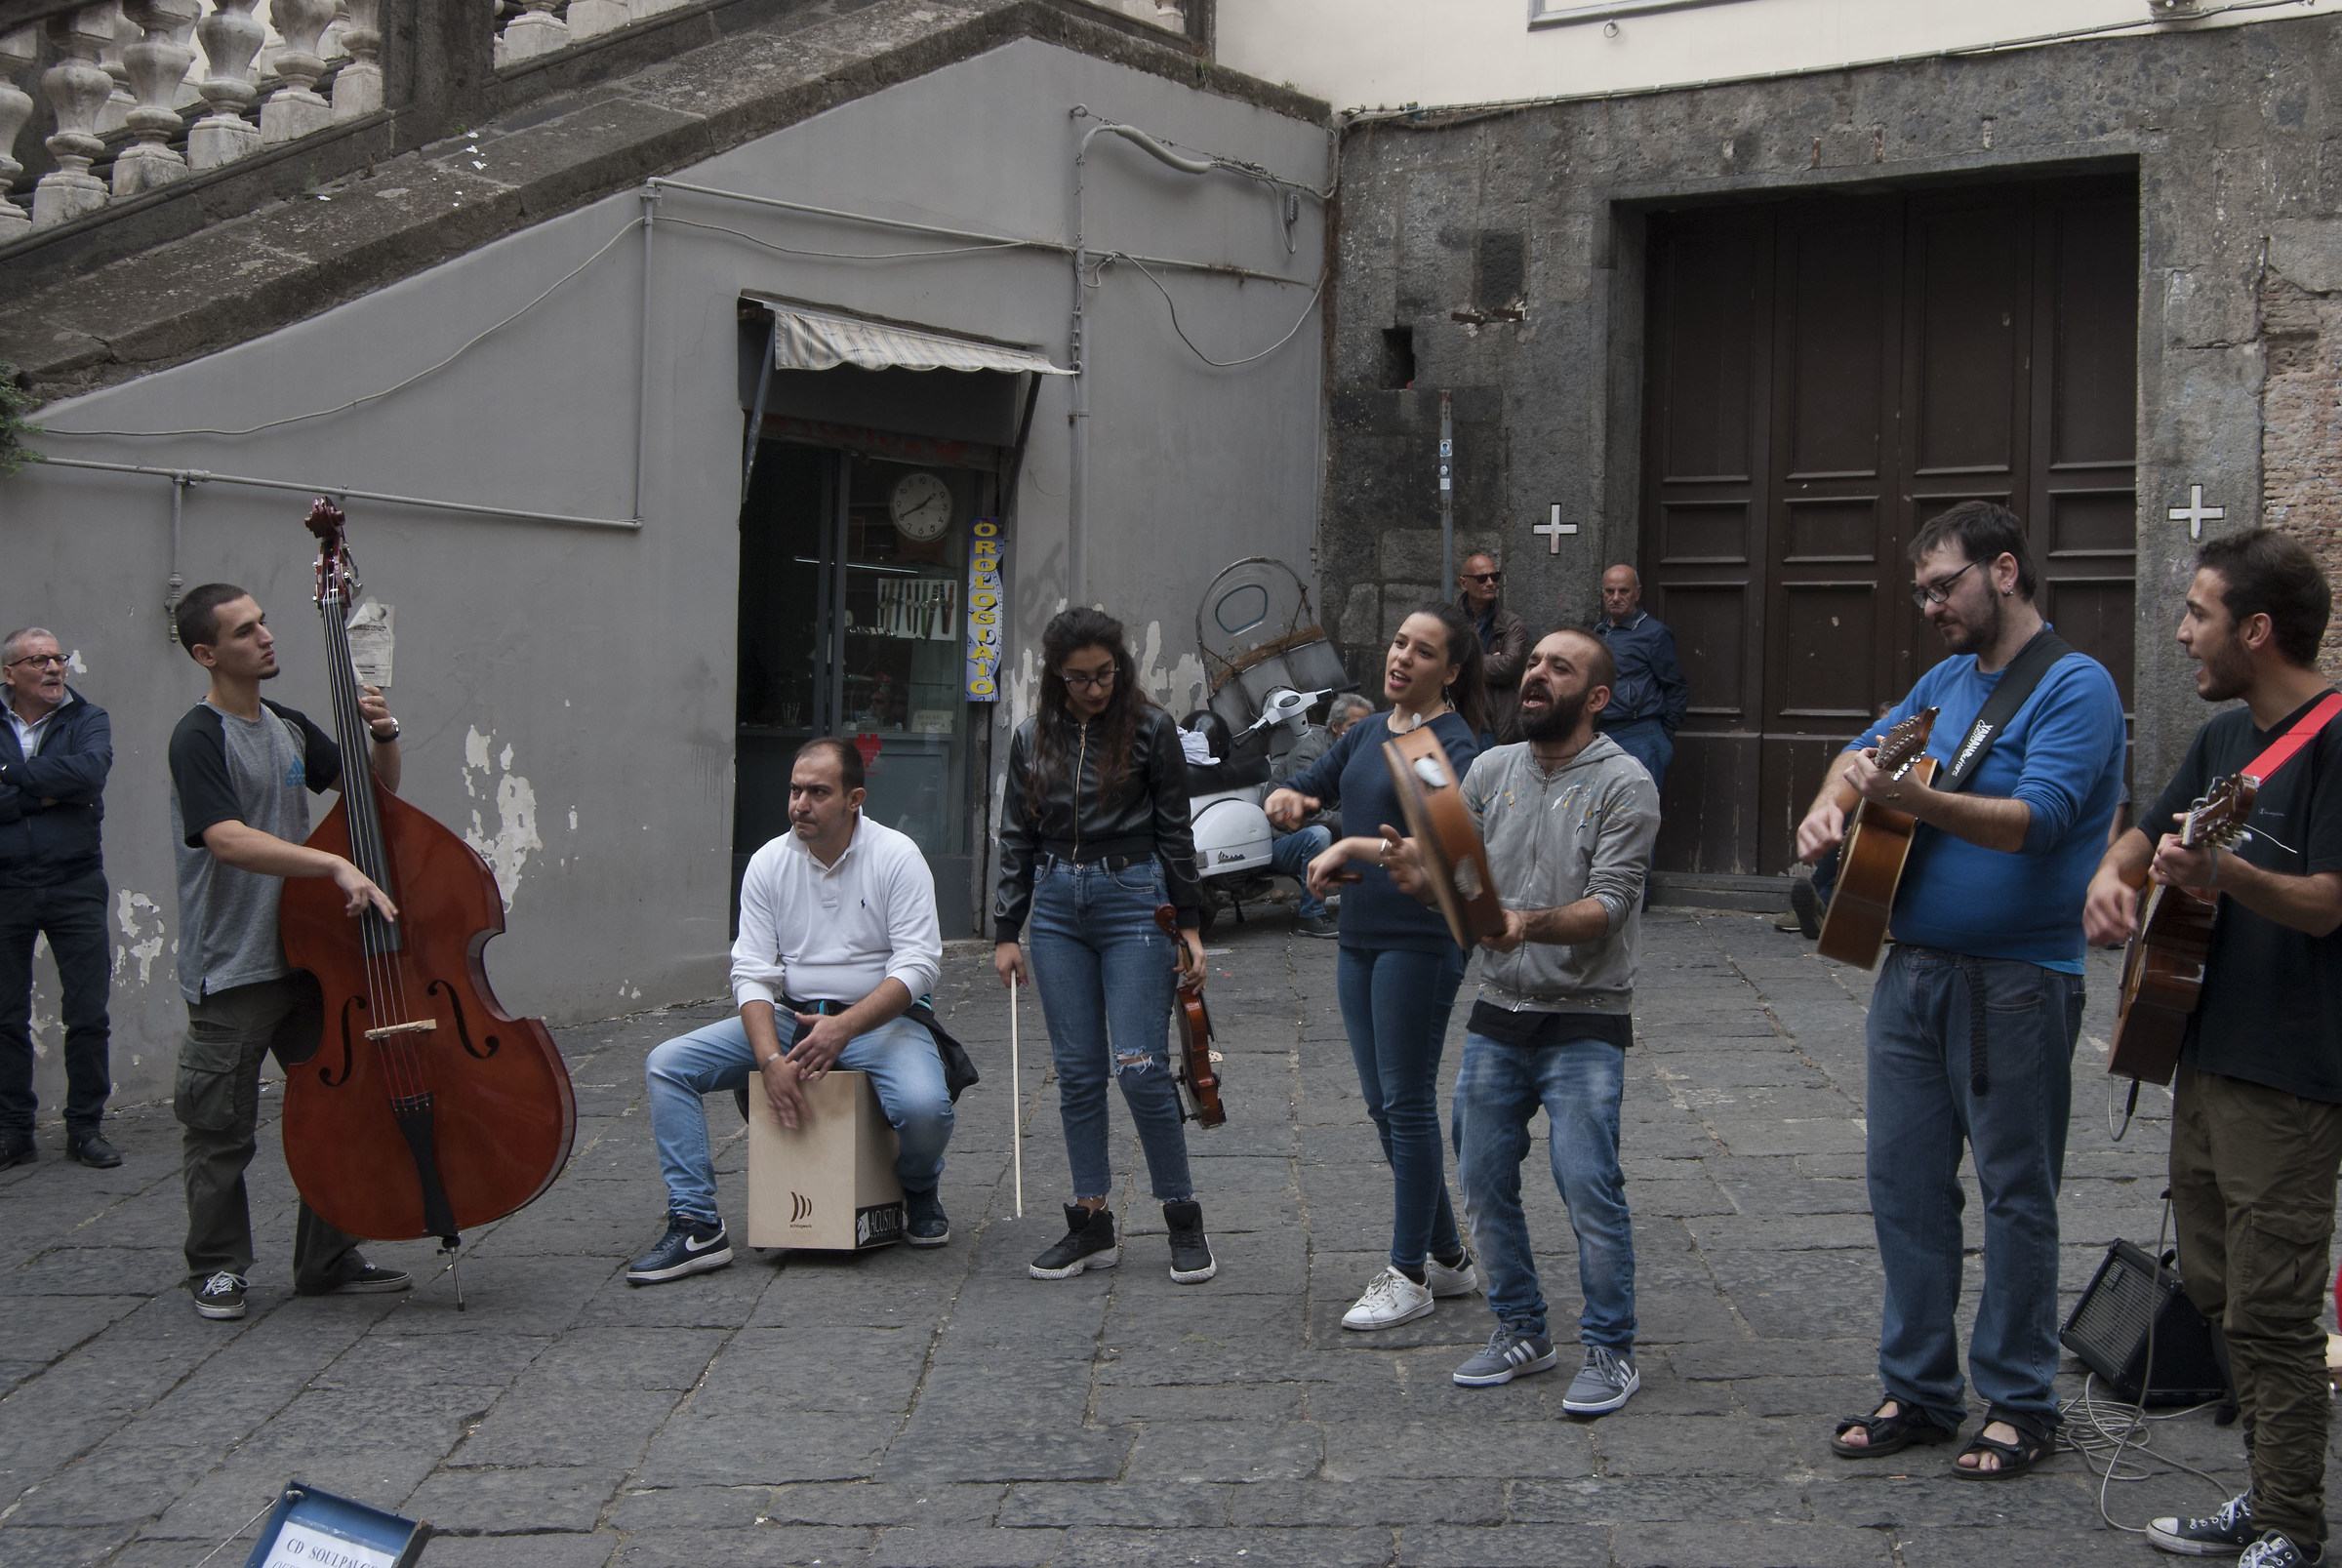 Street sound in Napoli...